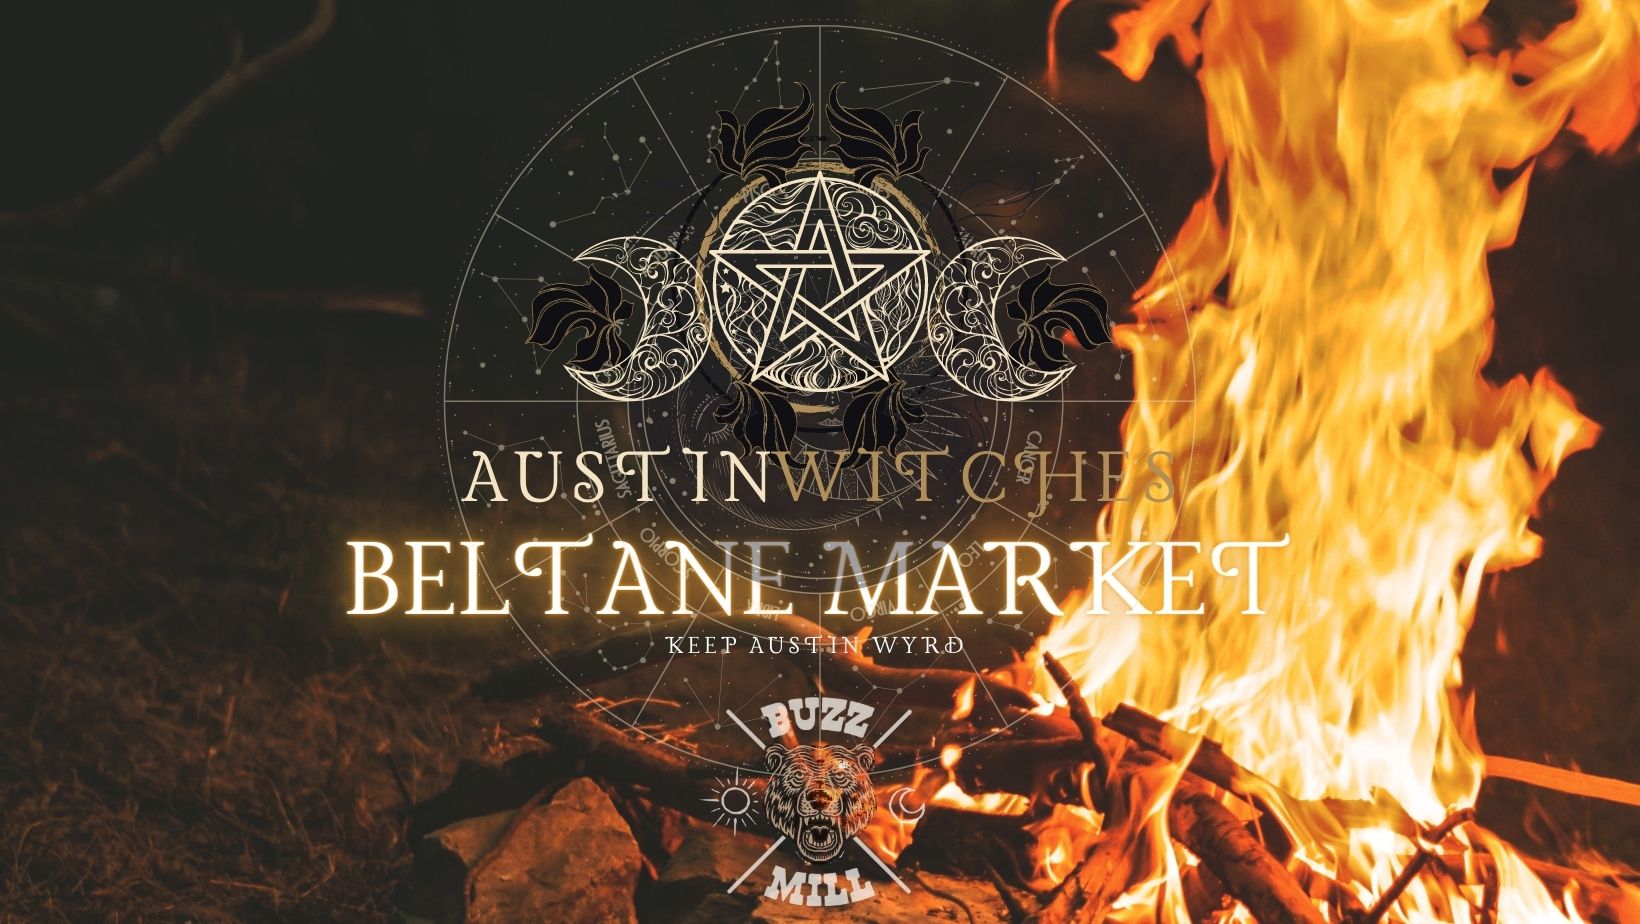 Austin Witches Beltane Market @ Buzz Mill